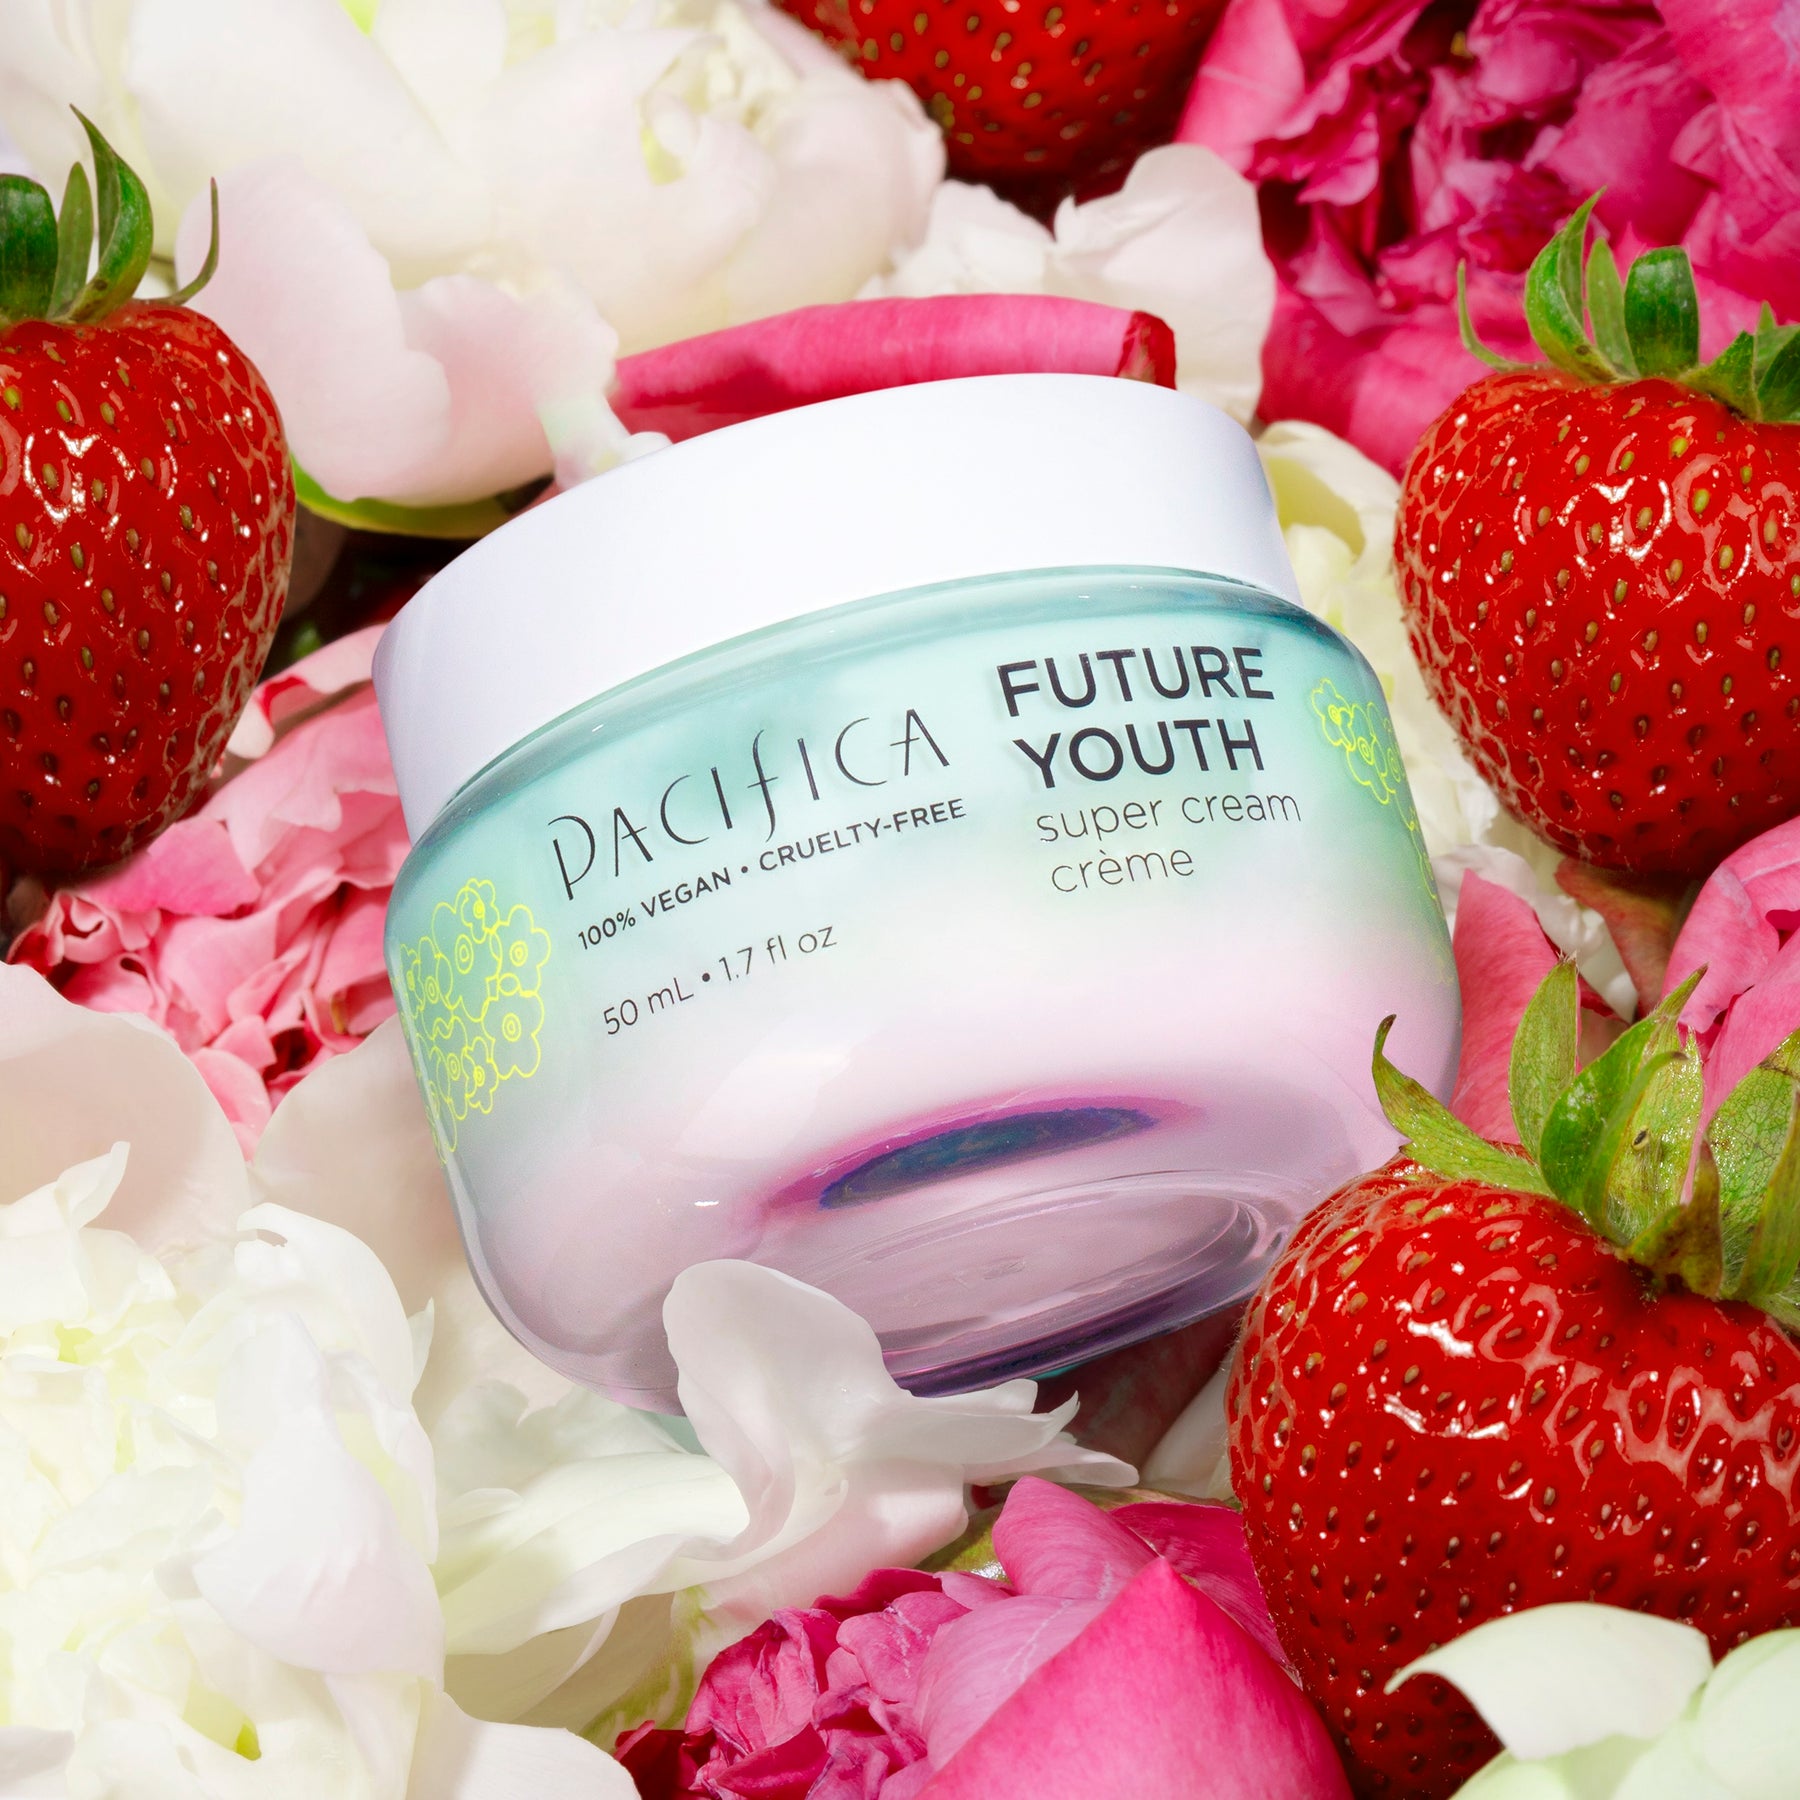 Future Youth Super Cream - Skin Care - Pacifica Beauty